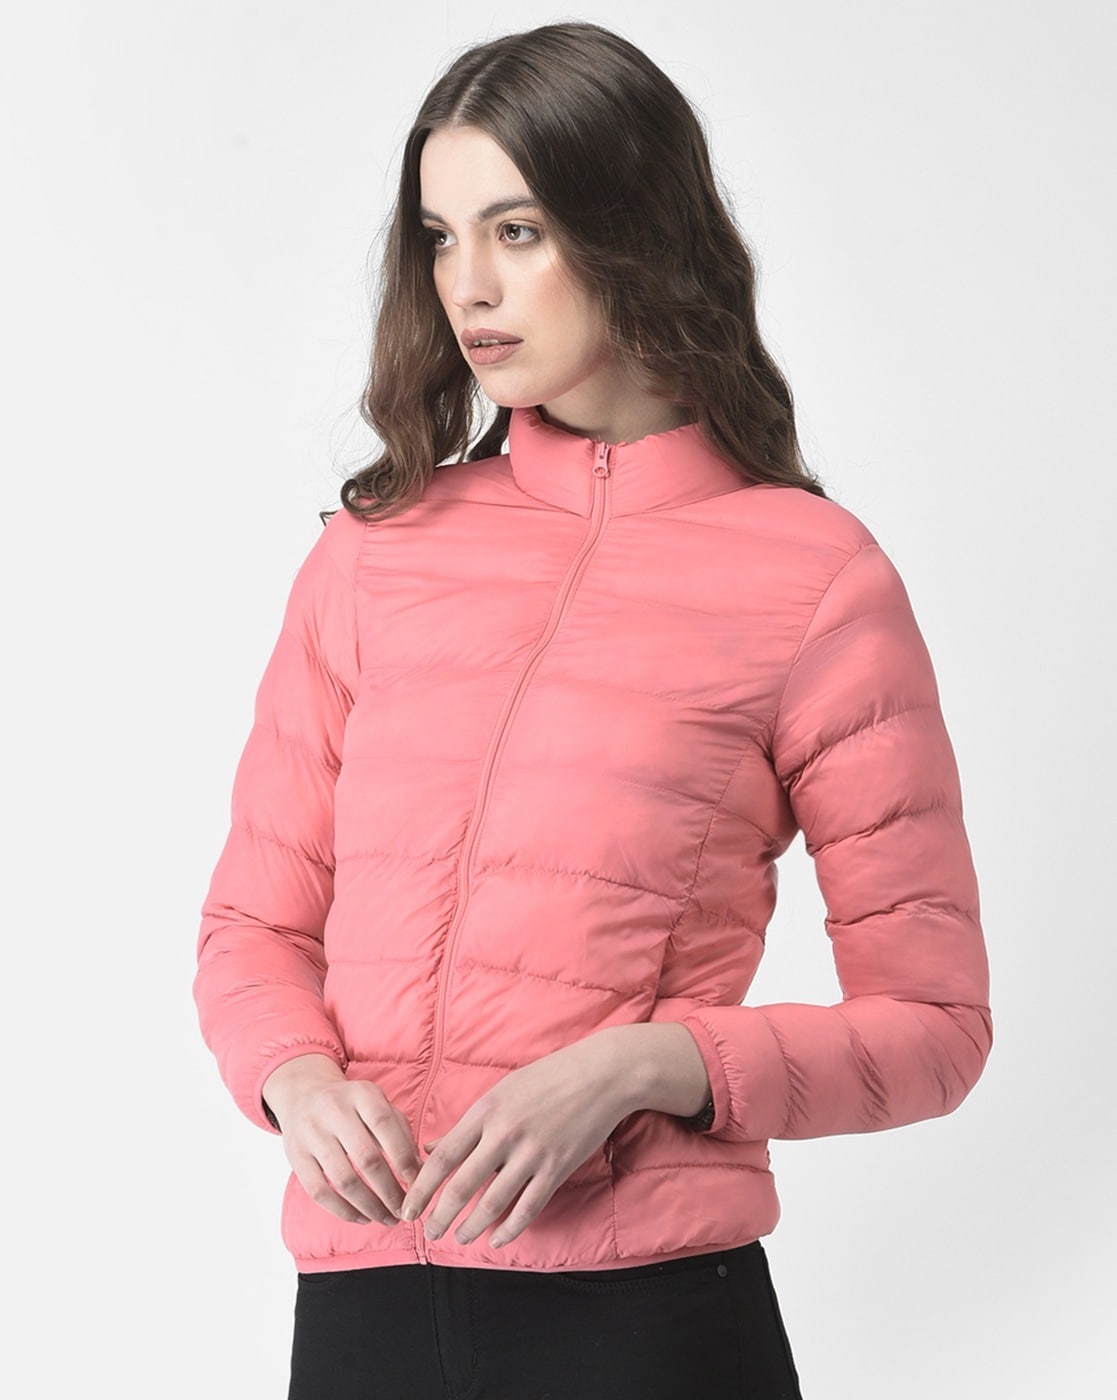 Miluxas Women's Plus Size Lightweight Puffer Jacket Packable Winter Jacket  Long-Sleeve Quilted Coat Hot Pink 14(XXXL) - Walmart.com